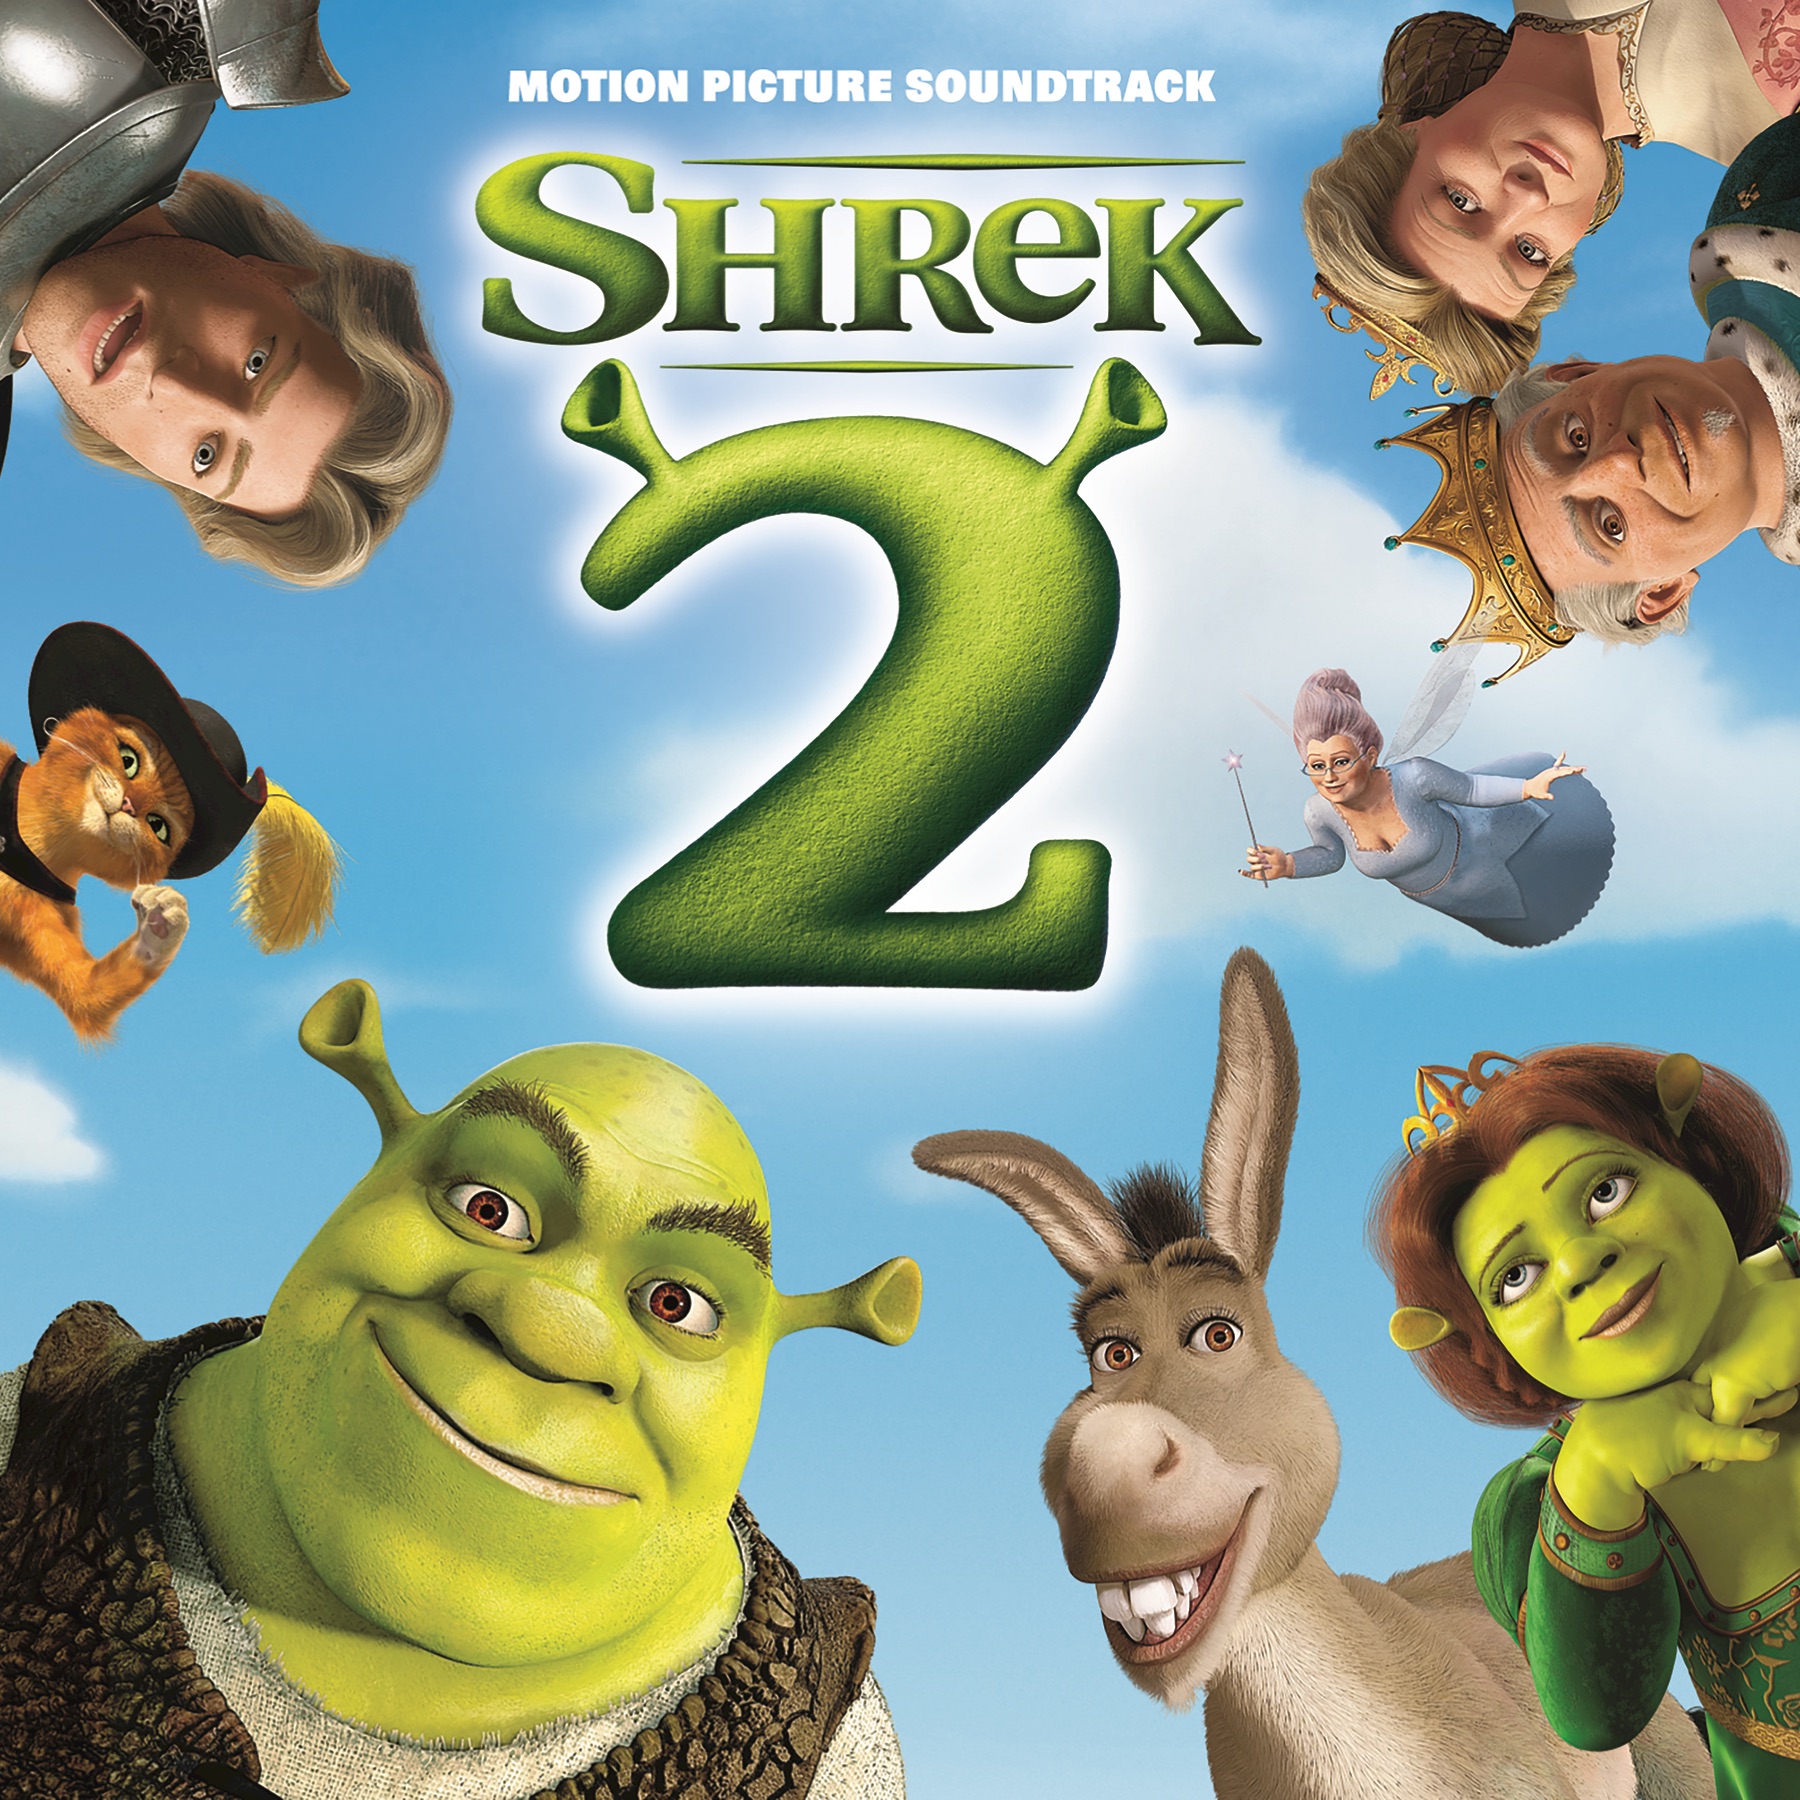 List Of Songs In Shrek